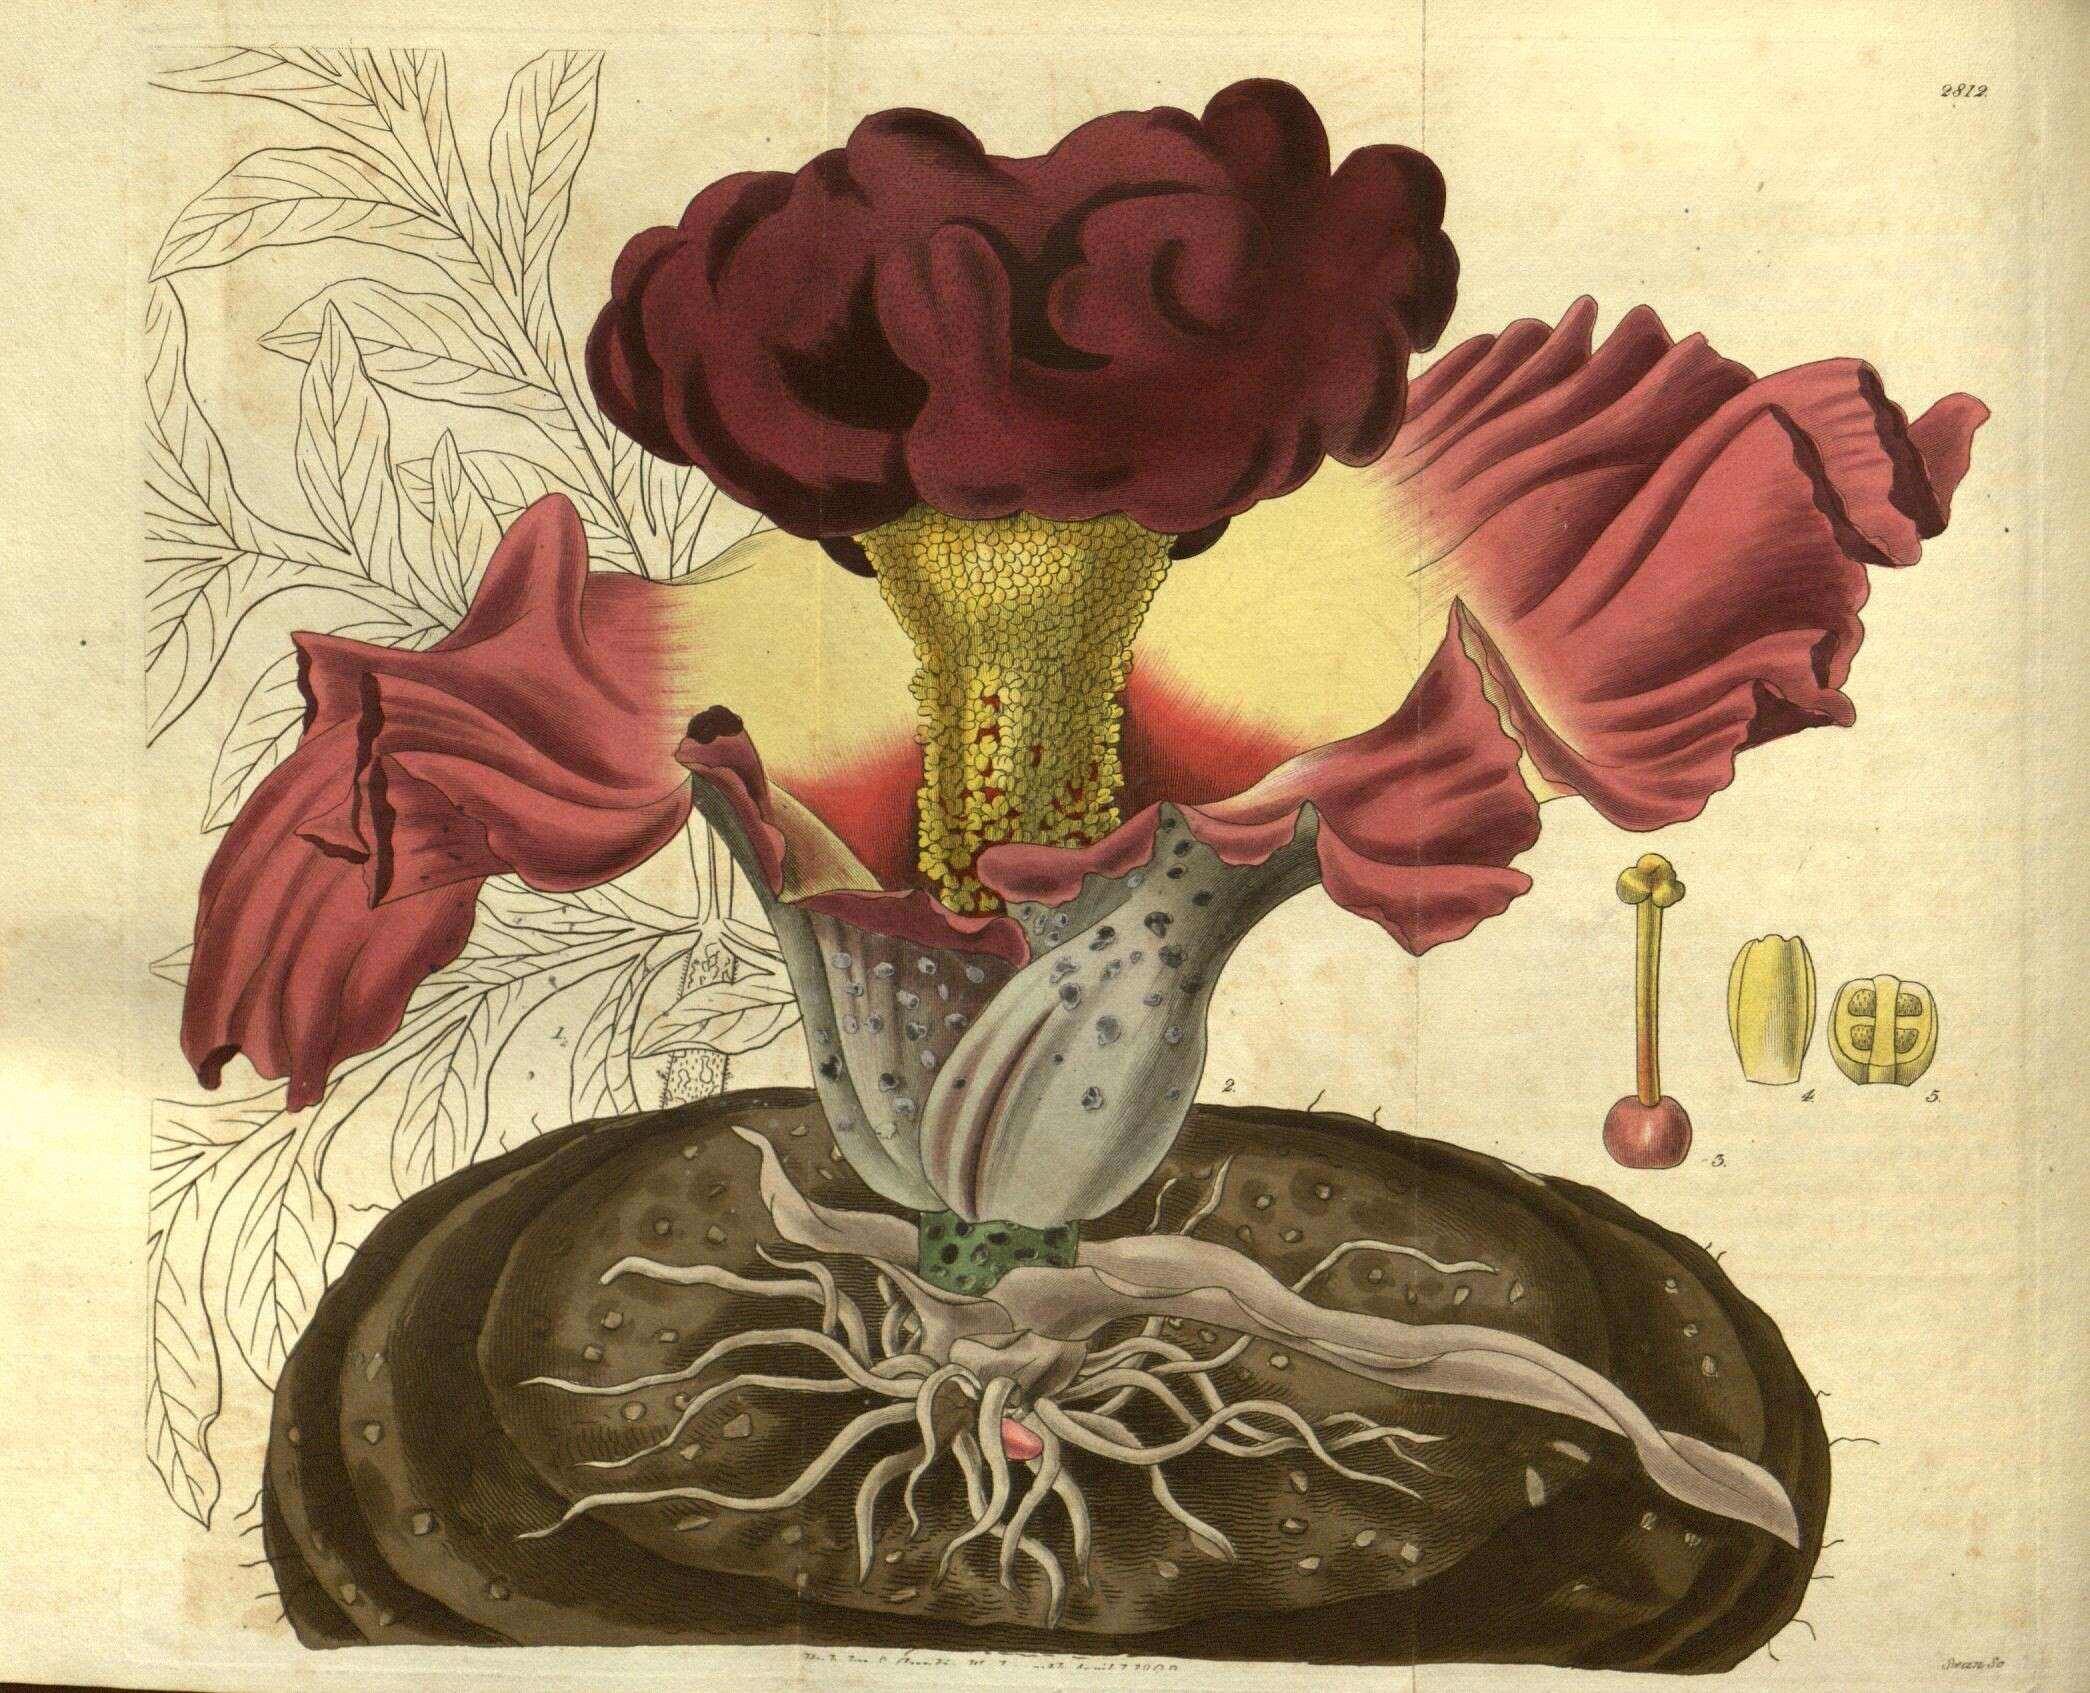 Image of amorphophallus